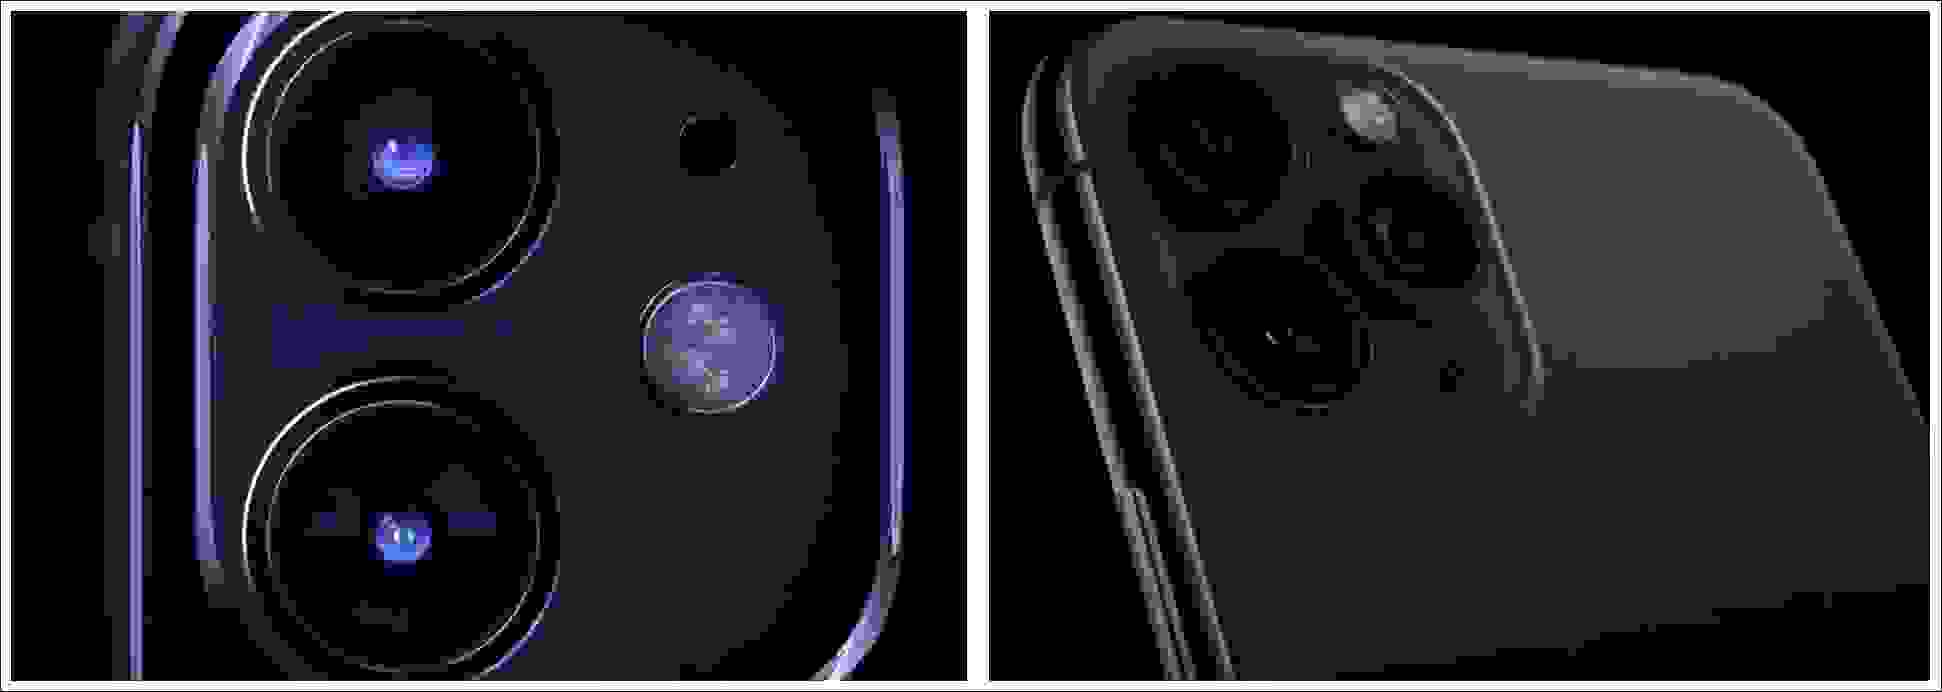 مقارنة الكاميرات في سلسلة هواتف أيفون 11 (iPhone 11)